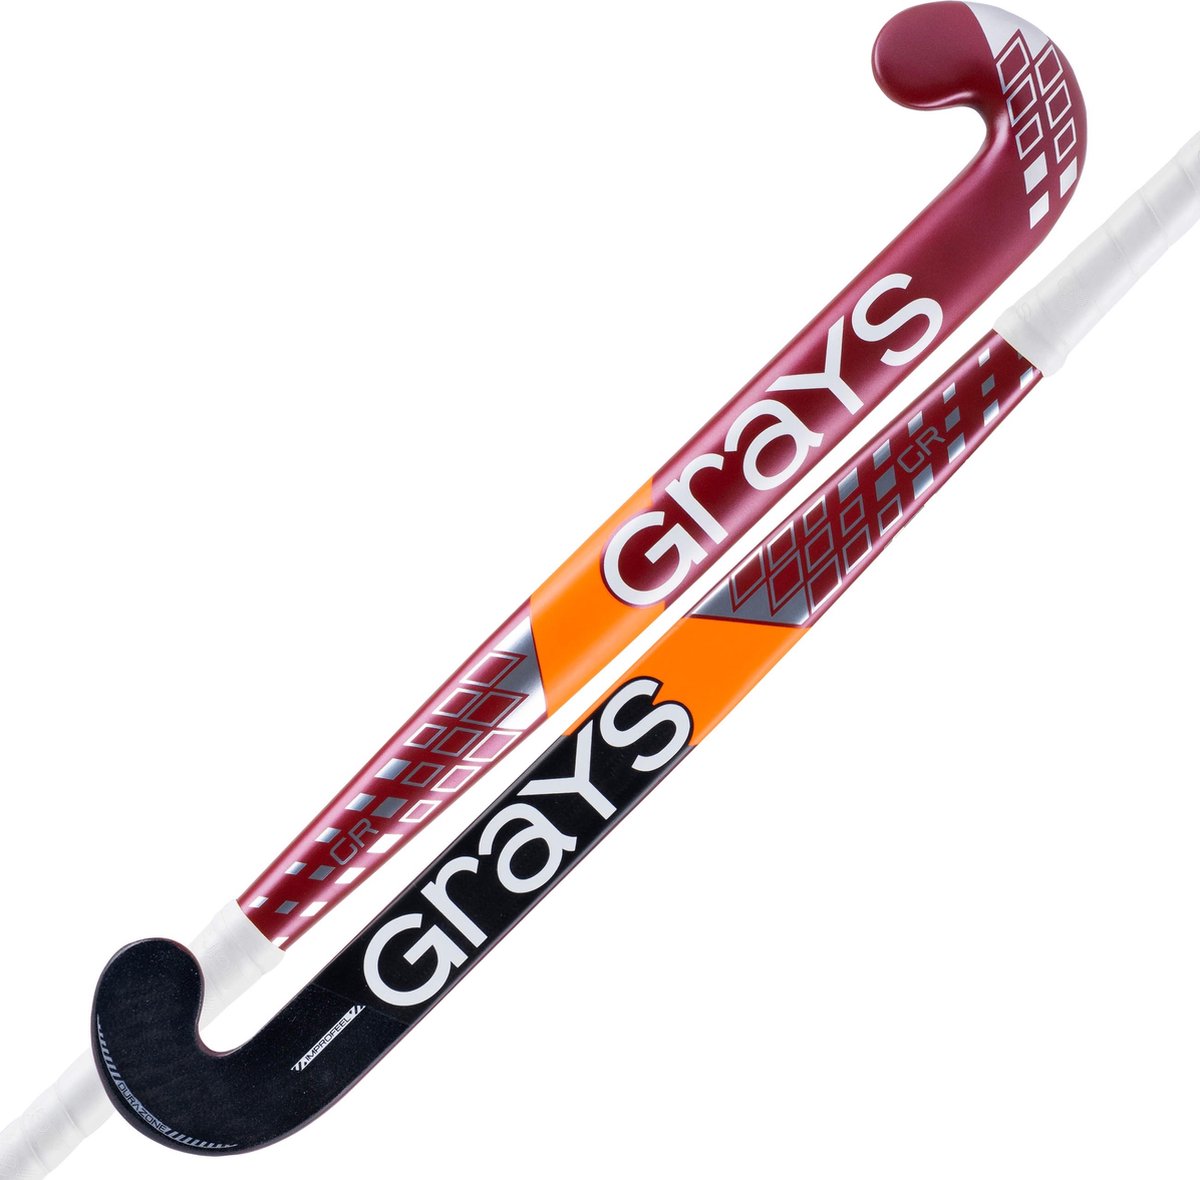 Grays composiet hockeystick GR7000 Jumbow Jun Stk Rood / Zilver - maat 34.0